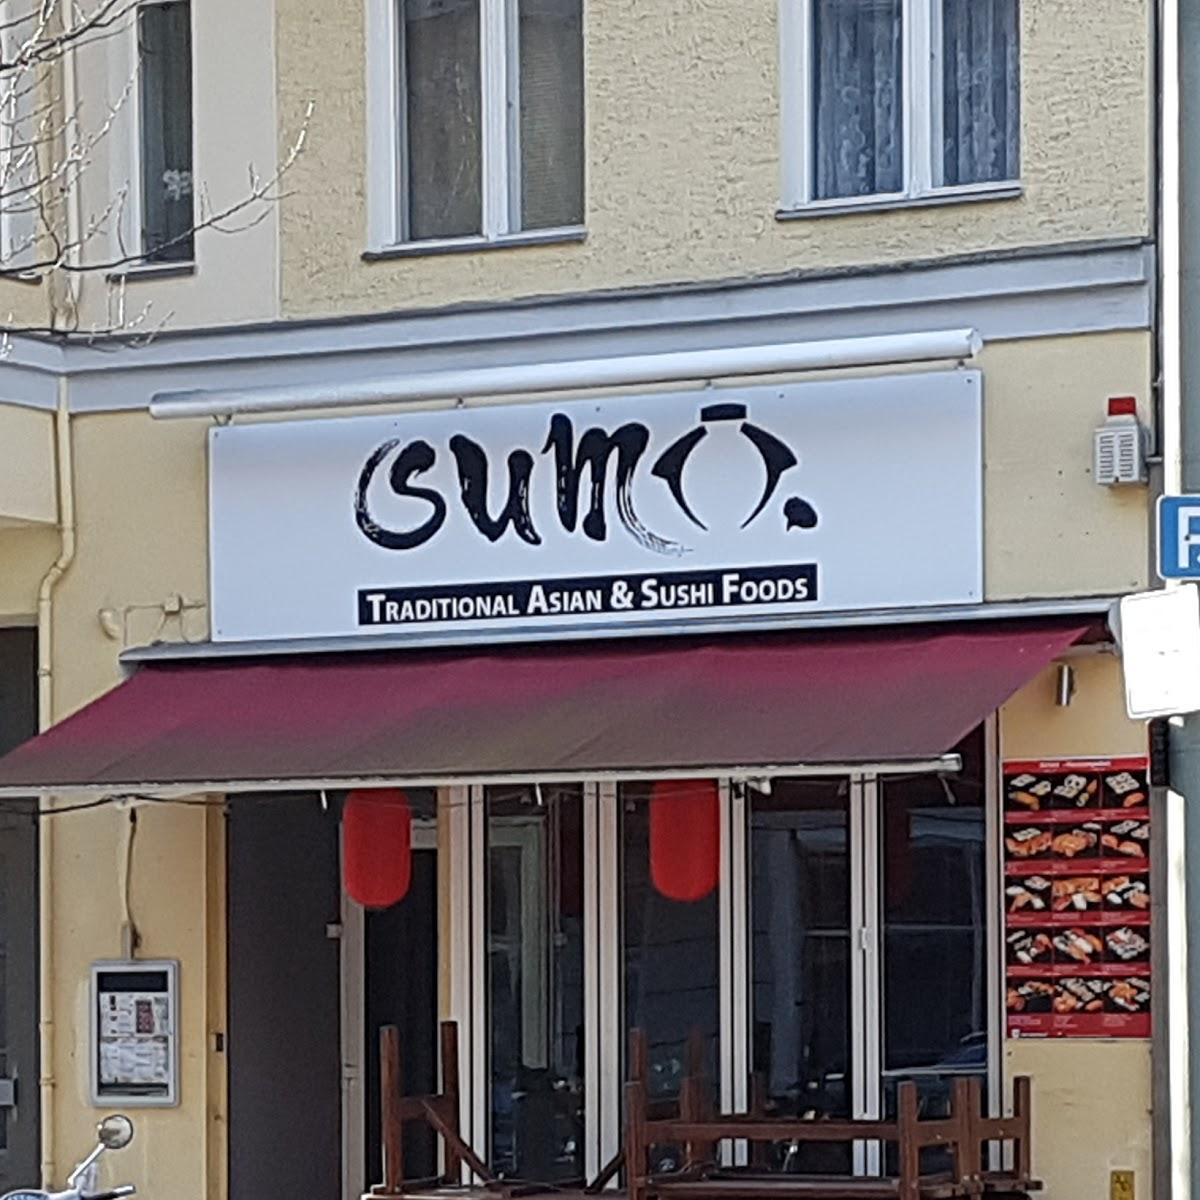 Restaurant "Sumo" in Berlin